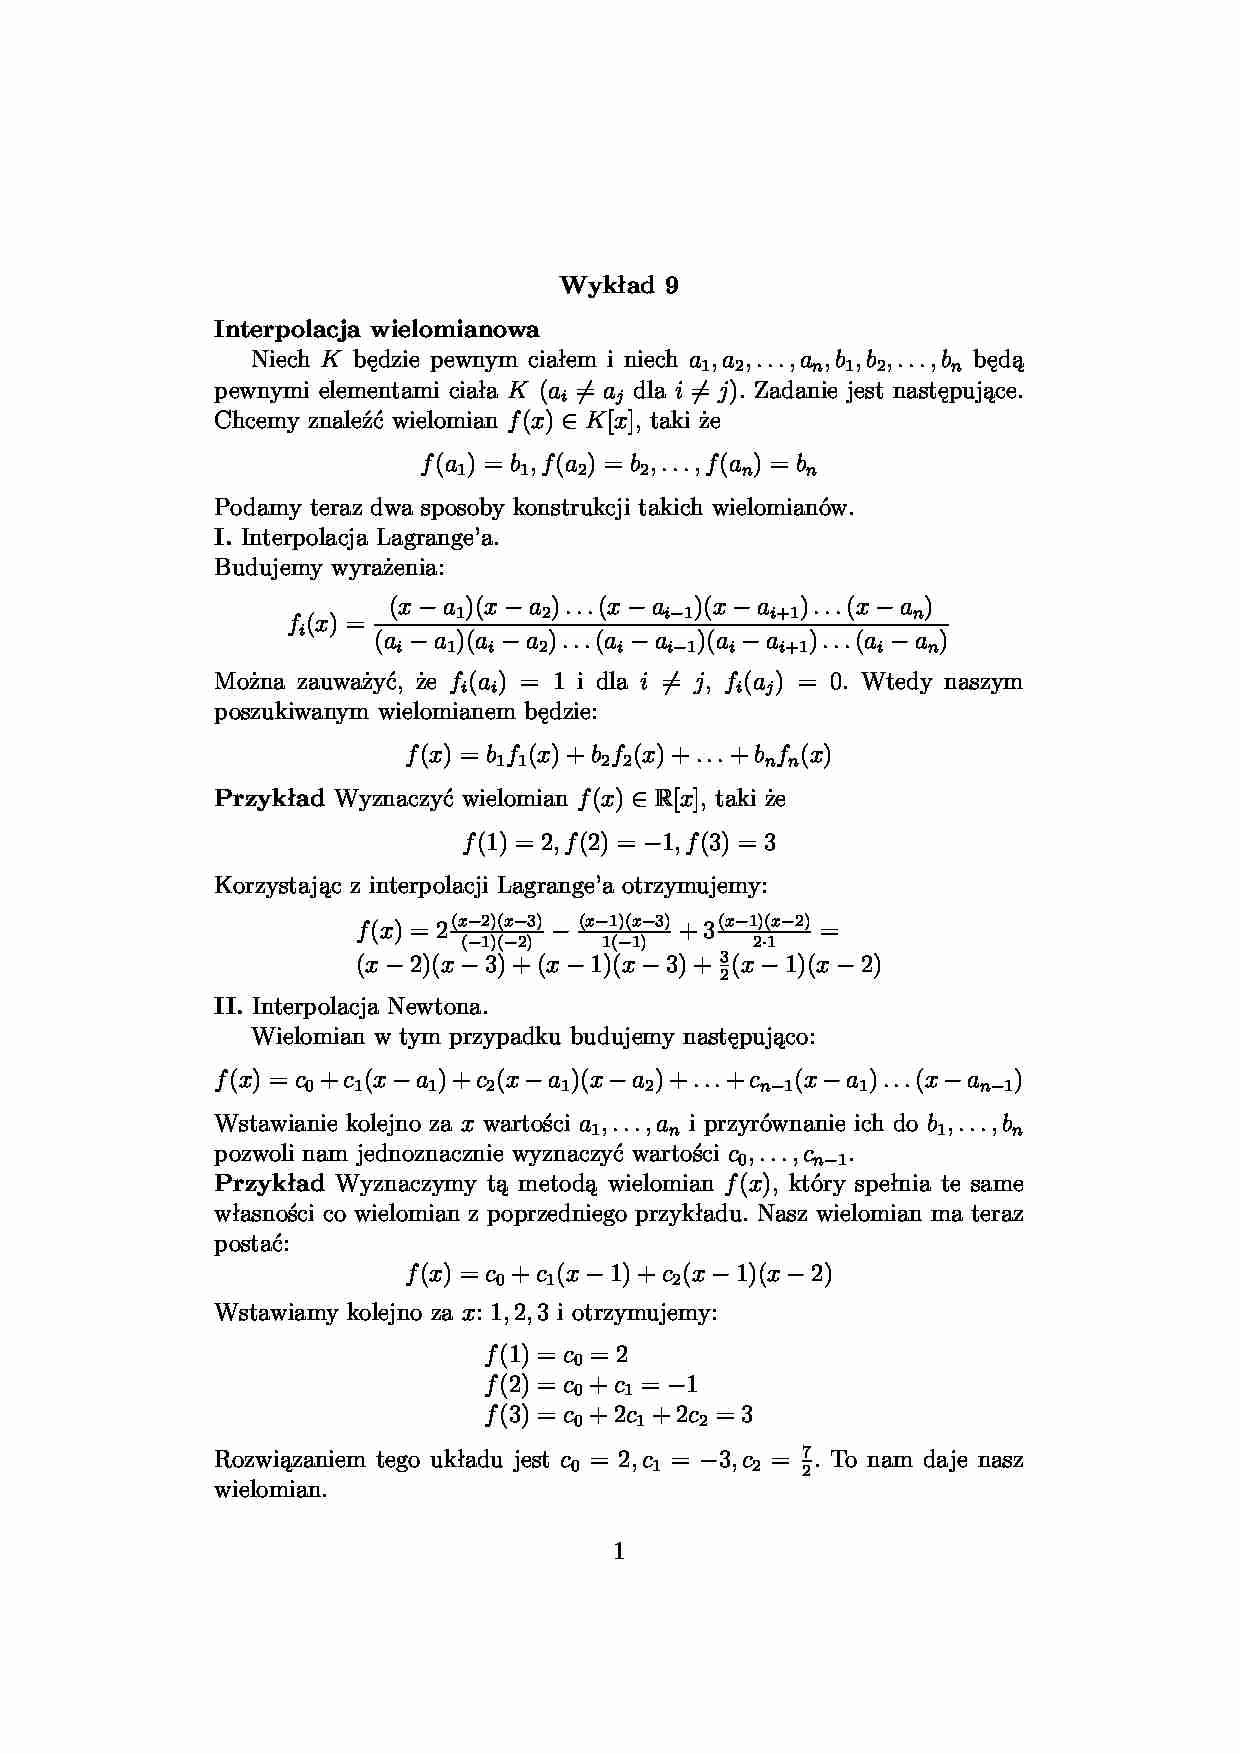 Interpolacja wielomianowa - algebra - strona 1